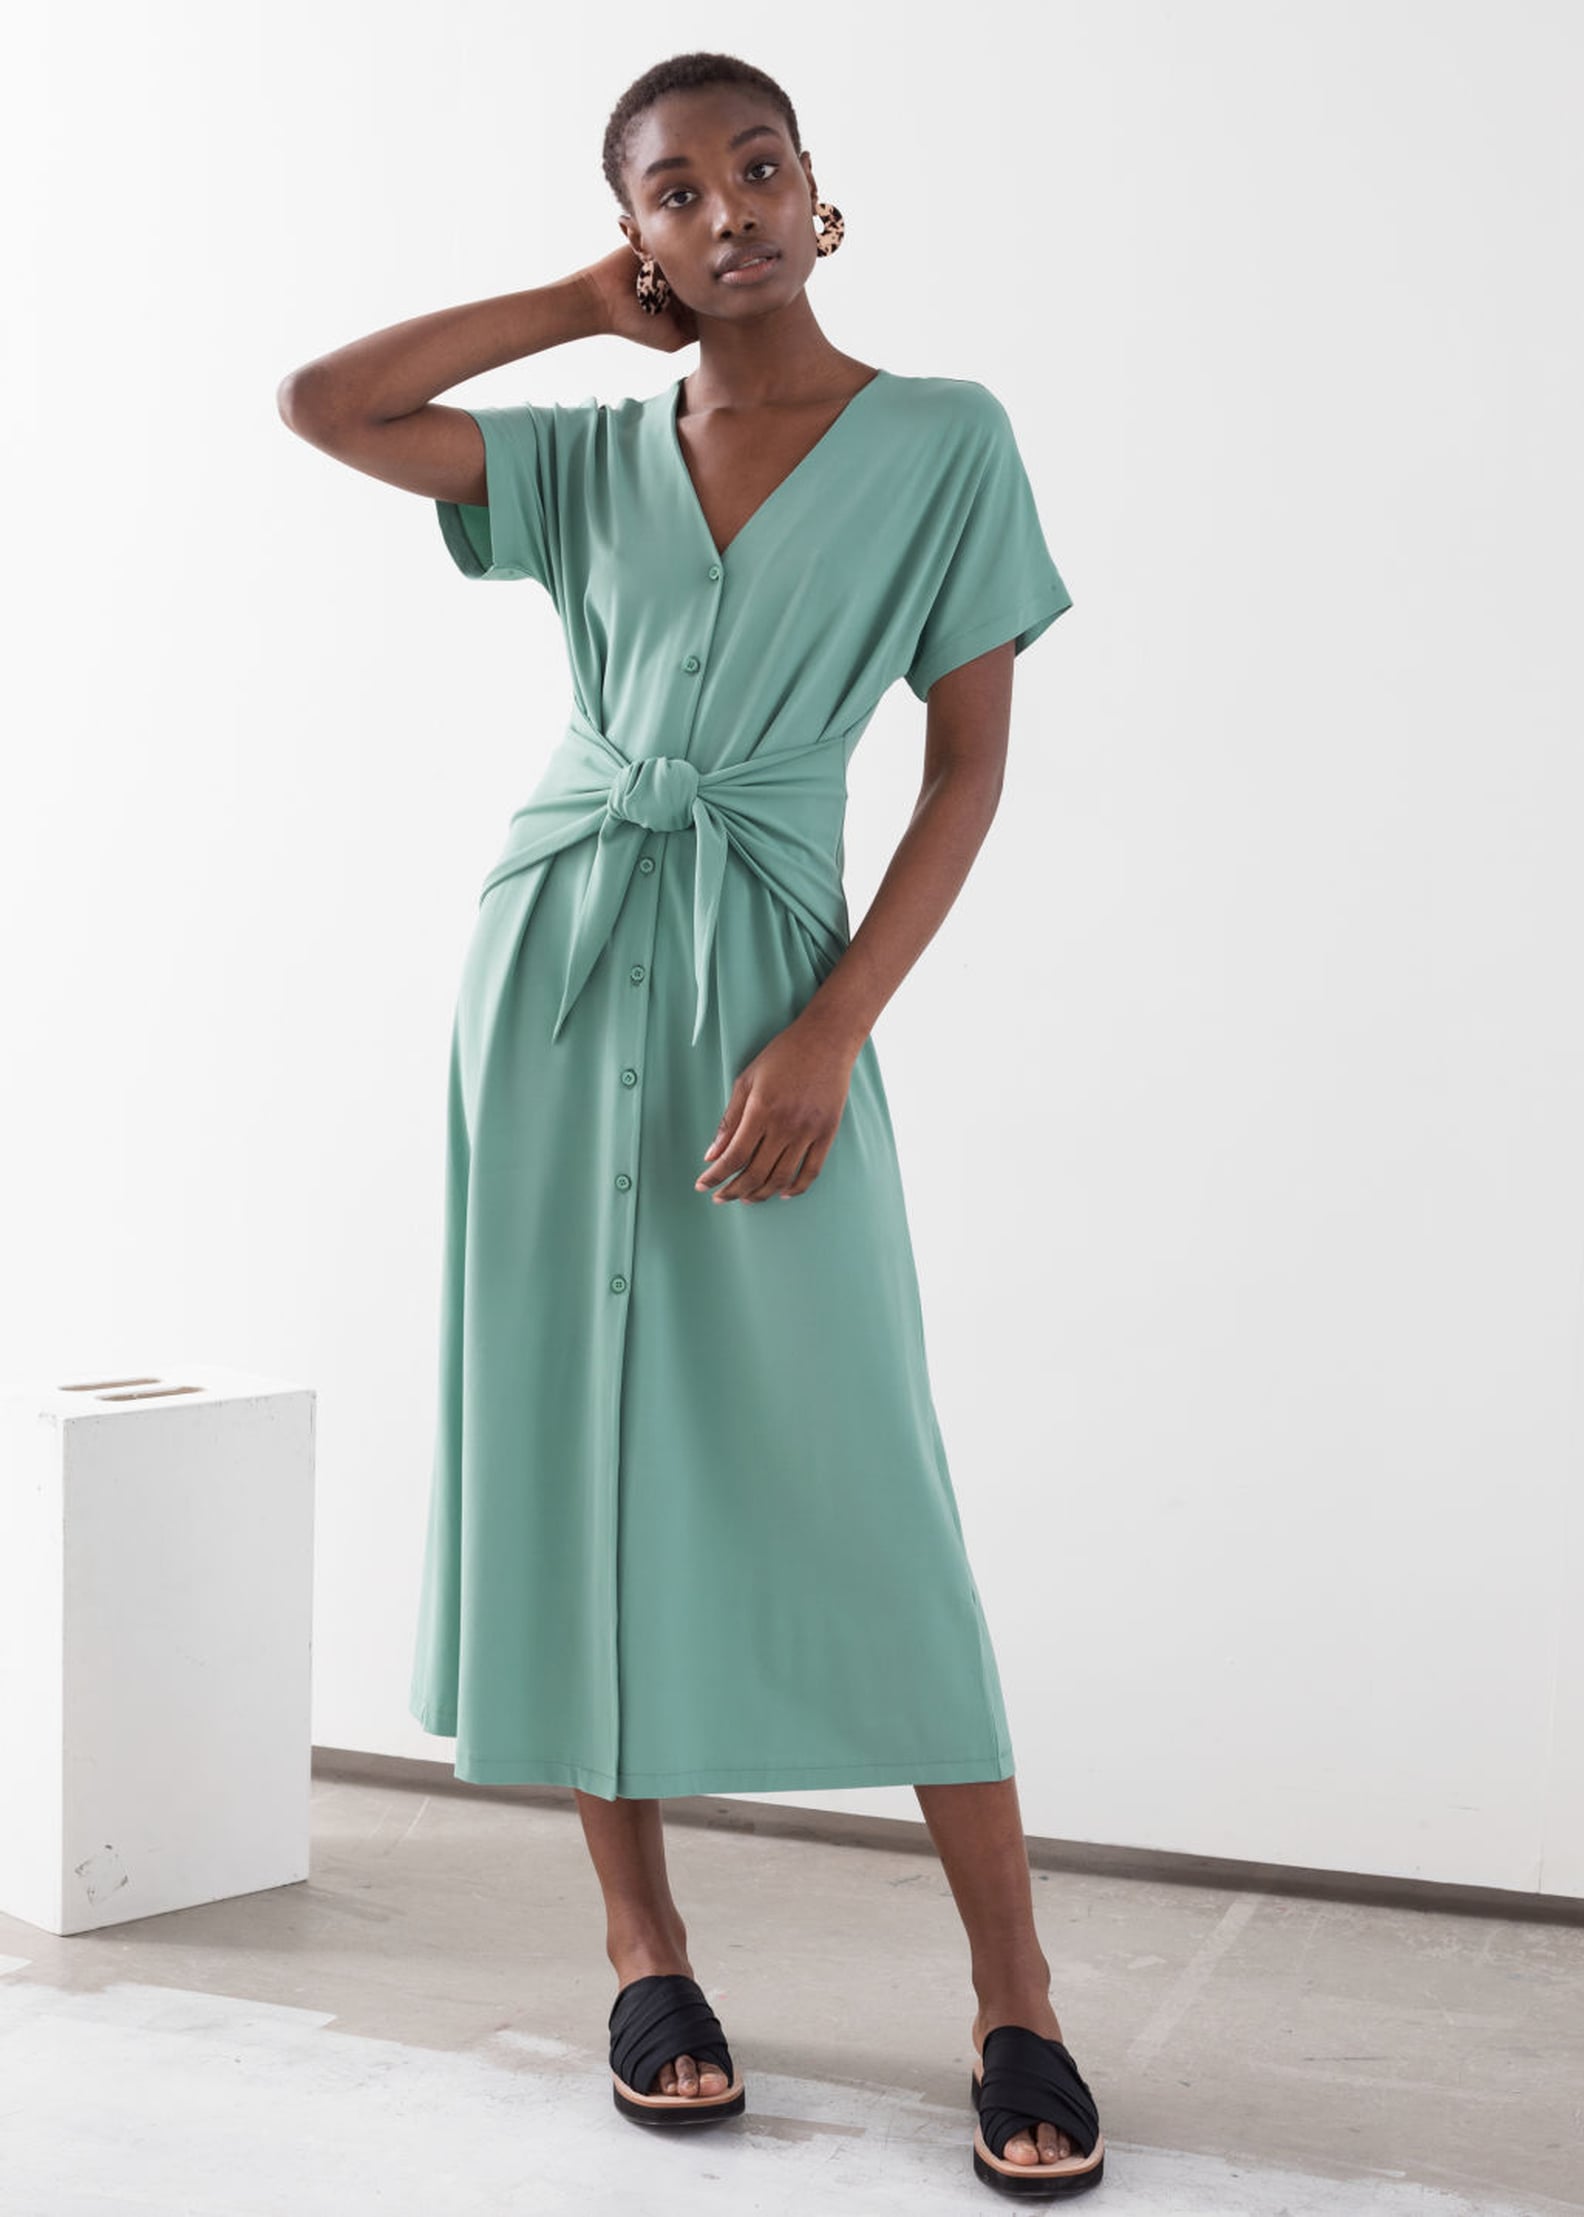 Summer Dresses Work Under $100 | POPSUGAR Fashion